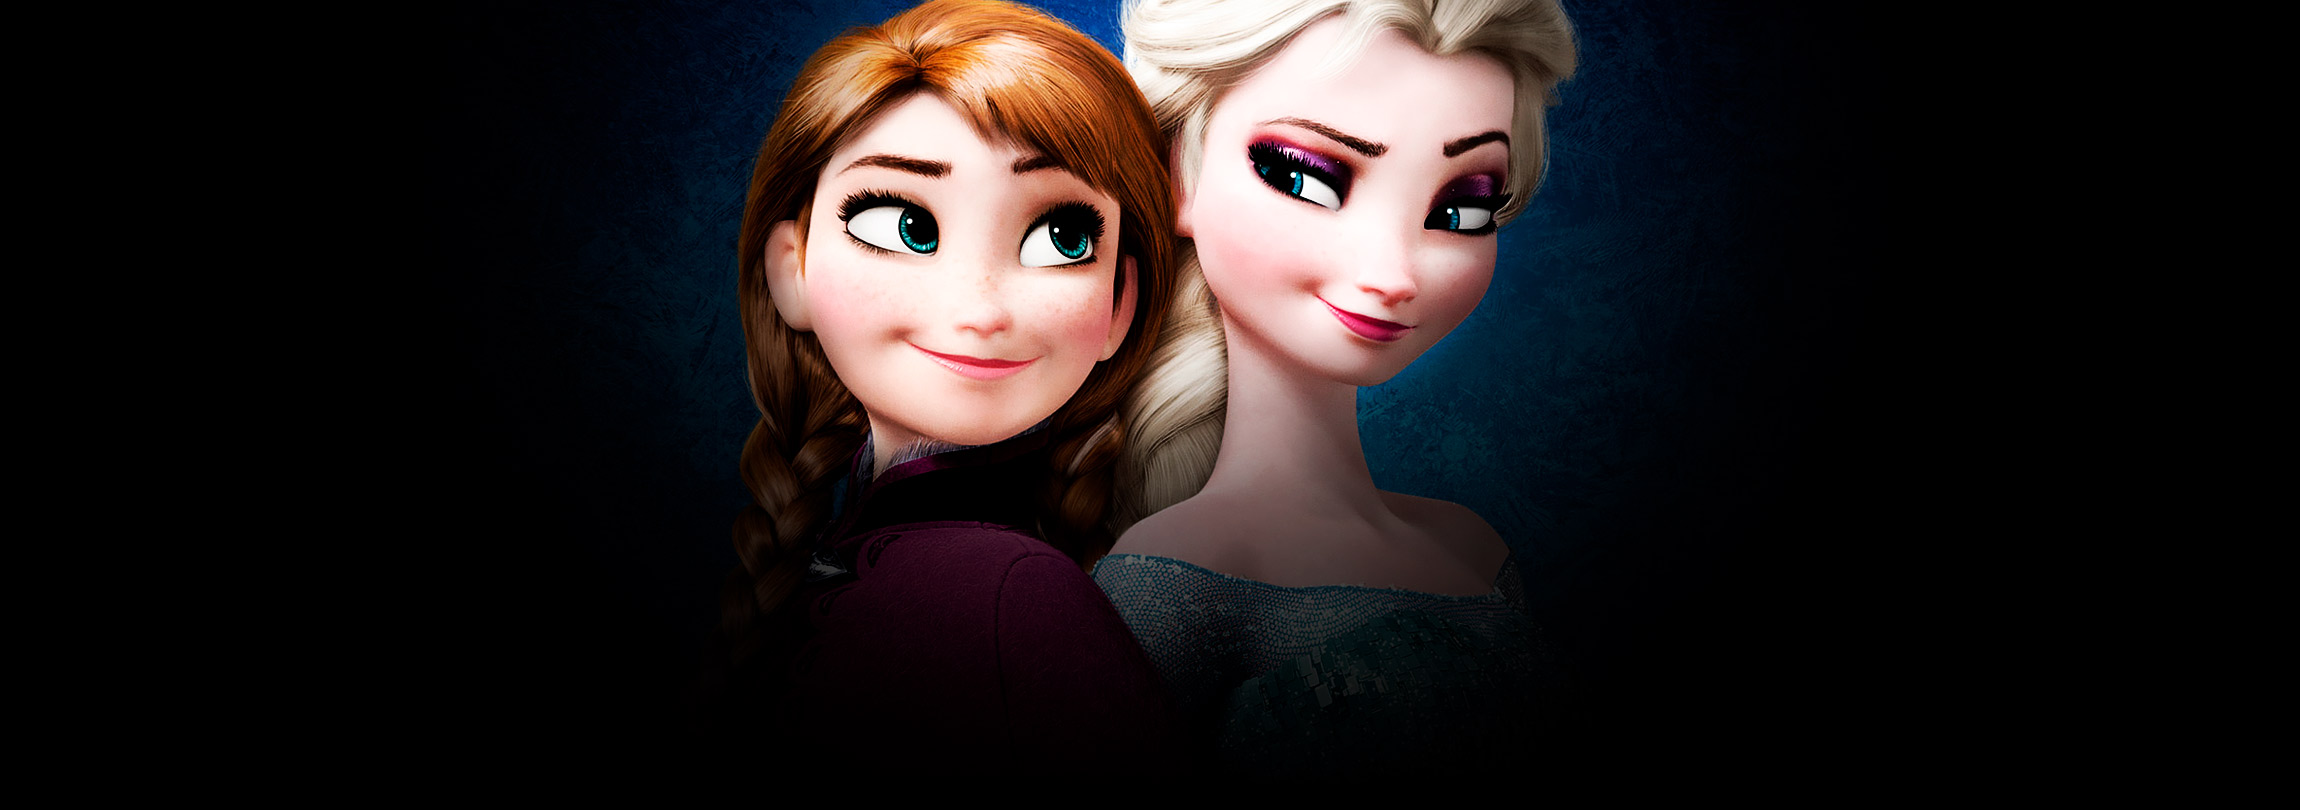 Por que a Disney quer tirar Elsa “do armário” em Frozen 2?